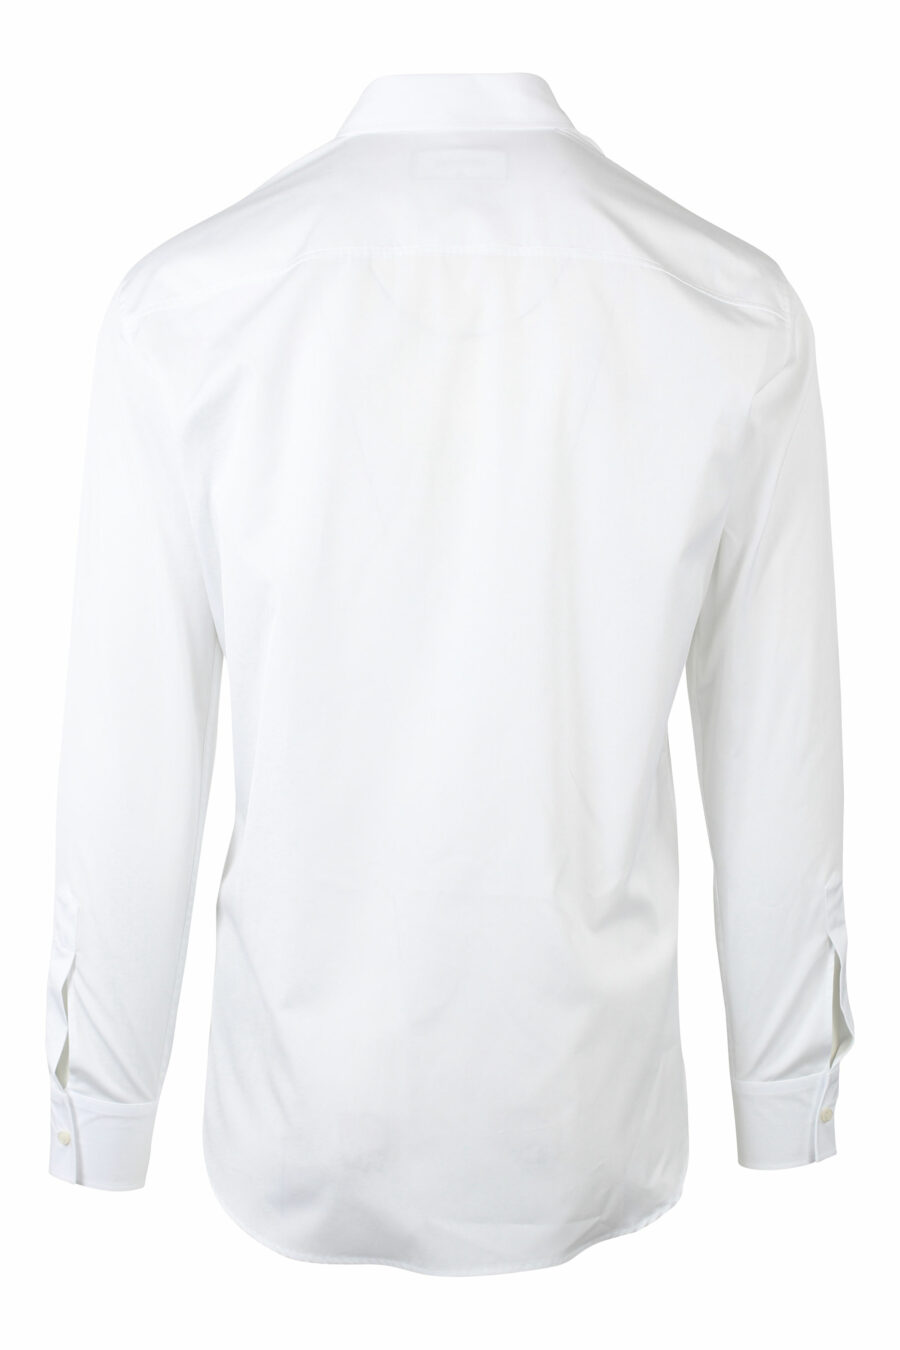 Camisa blanca con maxilogo doble logo "icon" vertical - IMG 0785